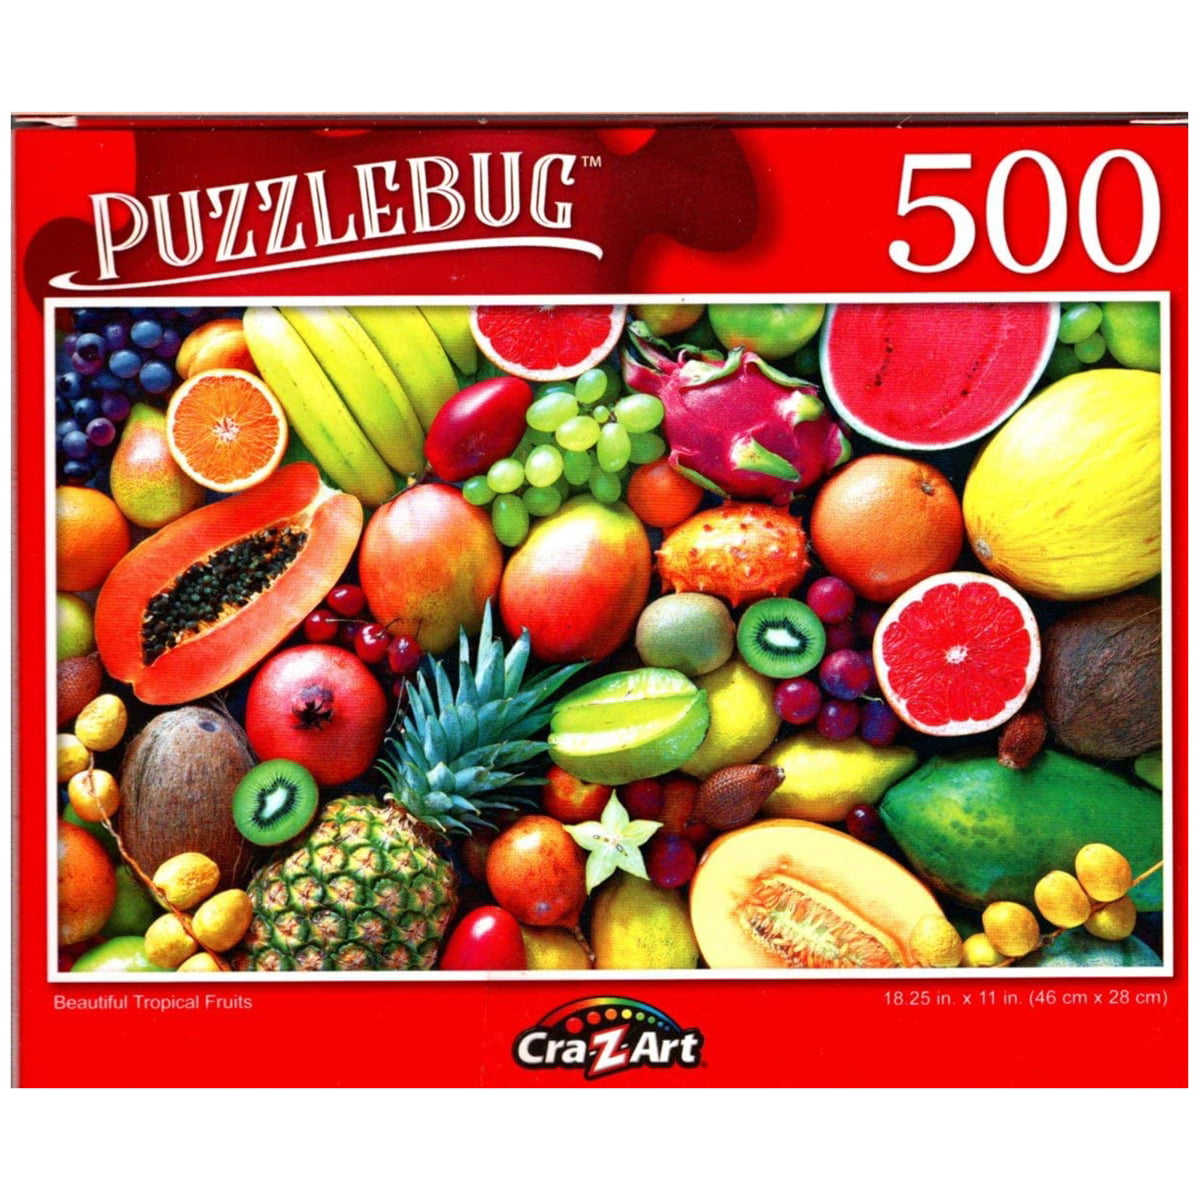 500 Piece Jigsaw Puzzle Puzzlebug New 